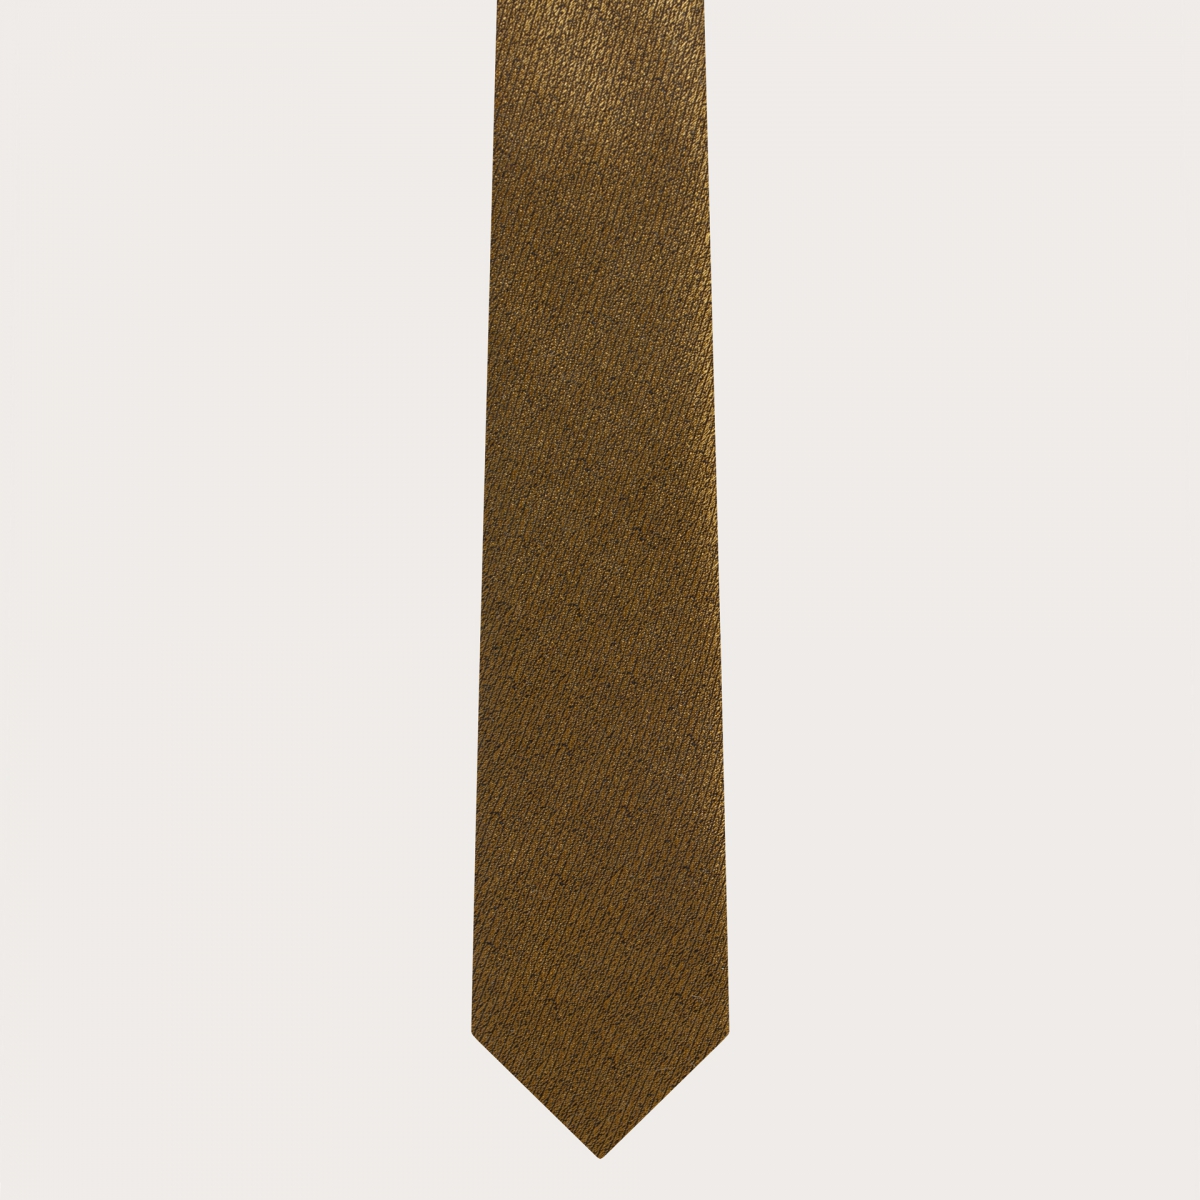 BRUCLE Elegante set di bretelle sottili e cravatta in seta jacquard oro iridescente